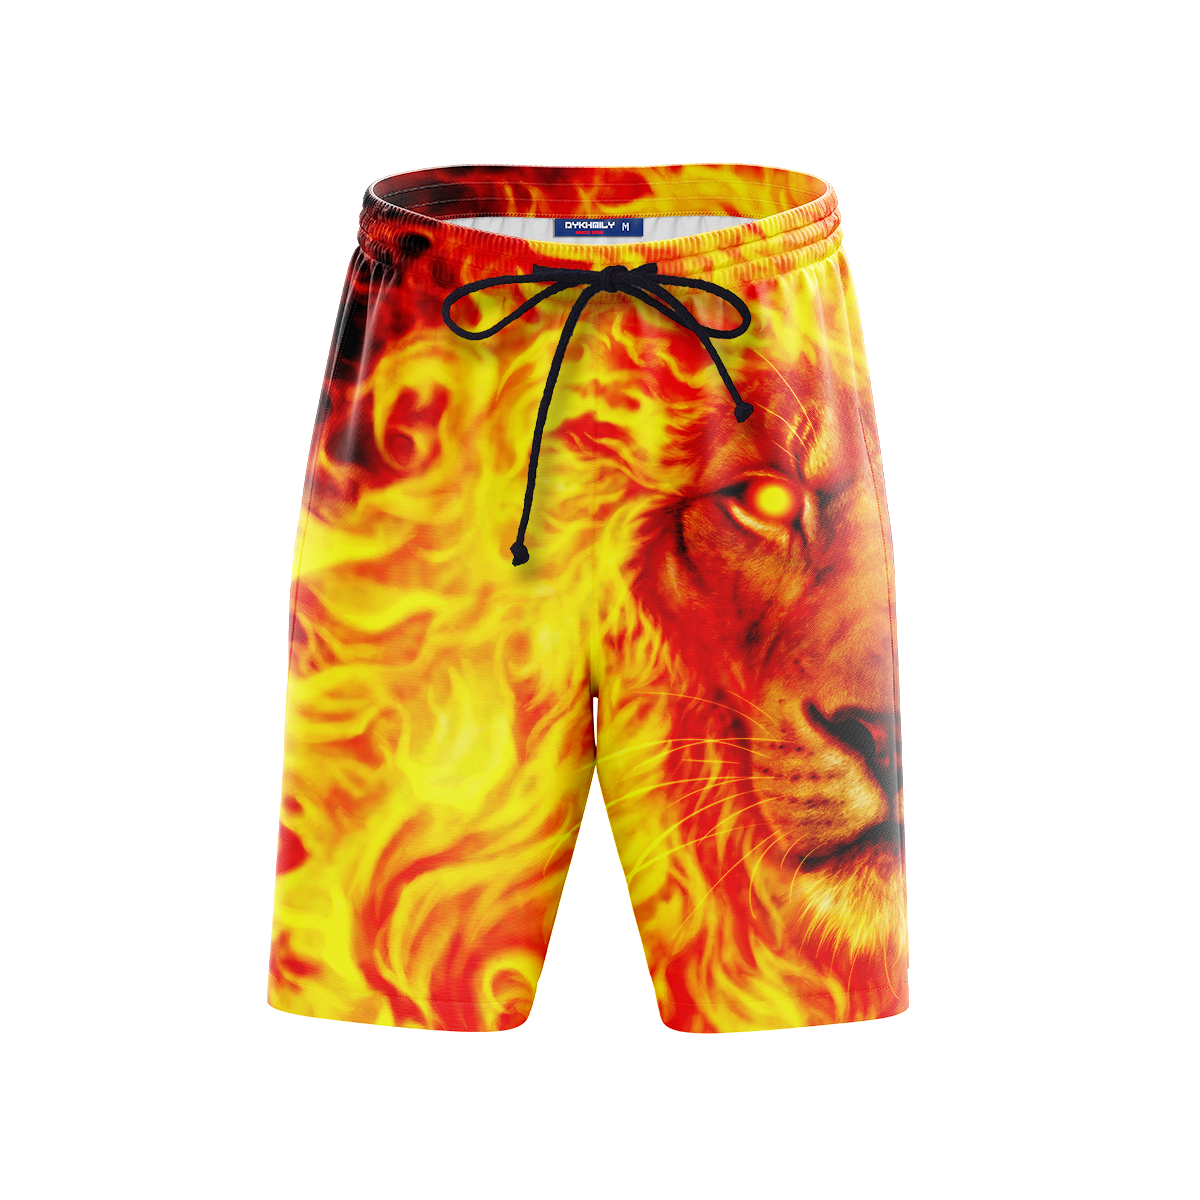 Sunlord Beach Shorts Short